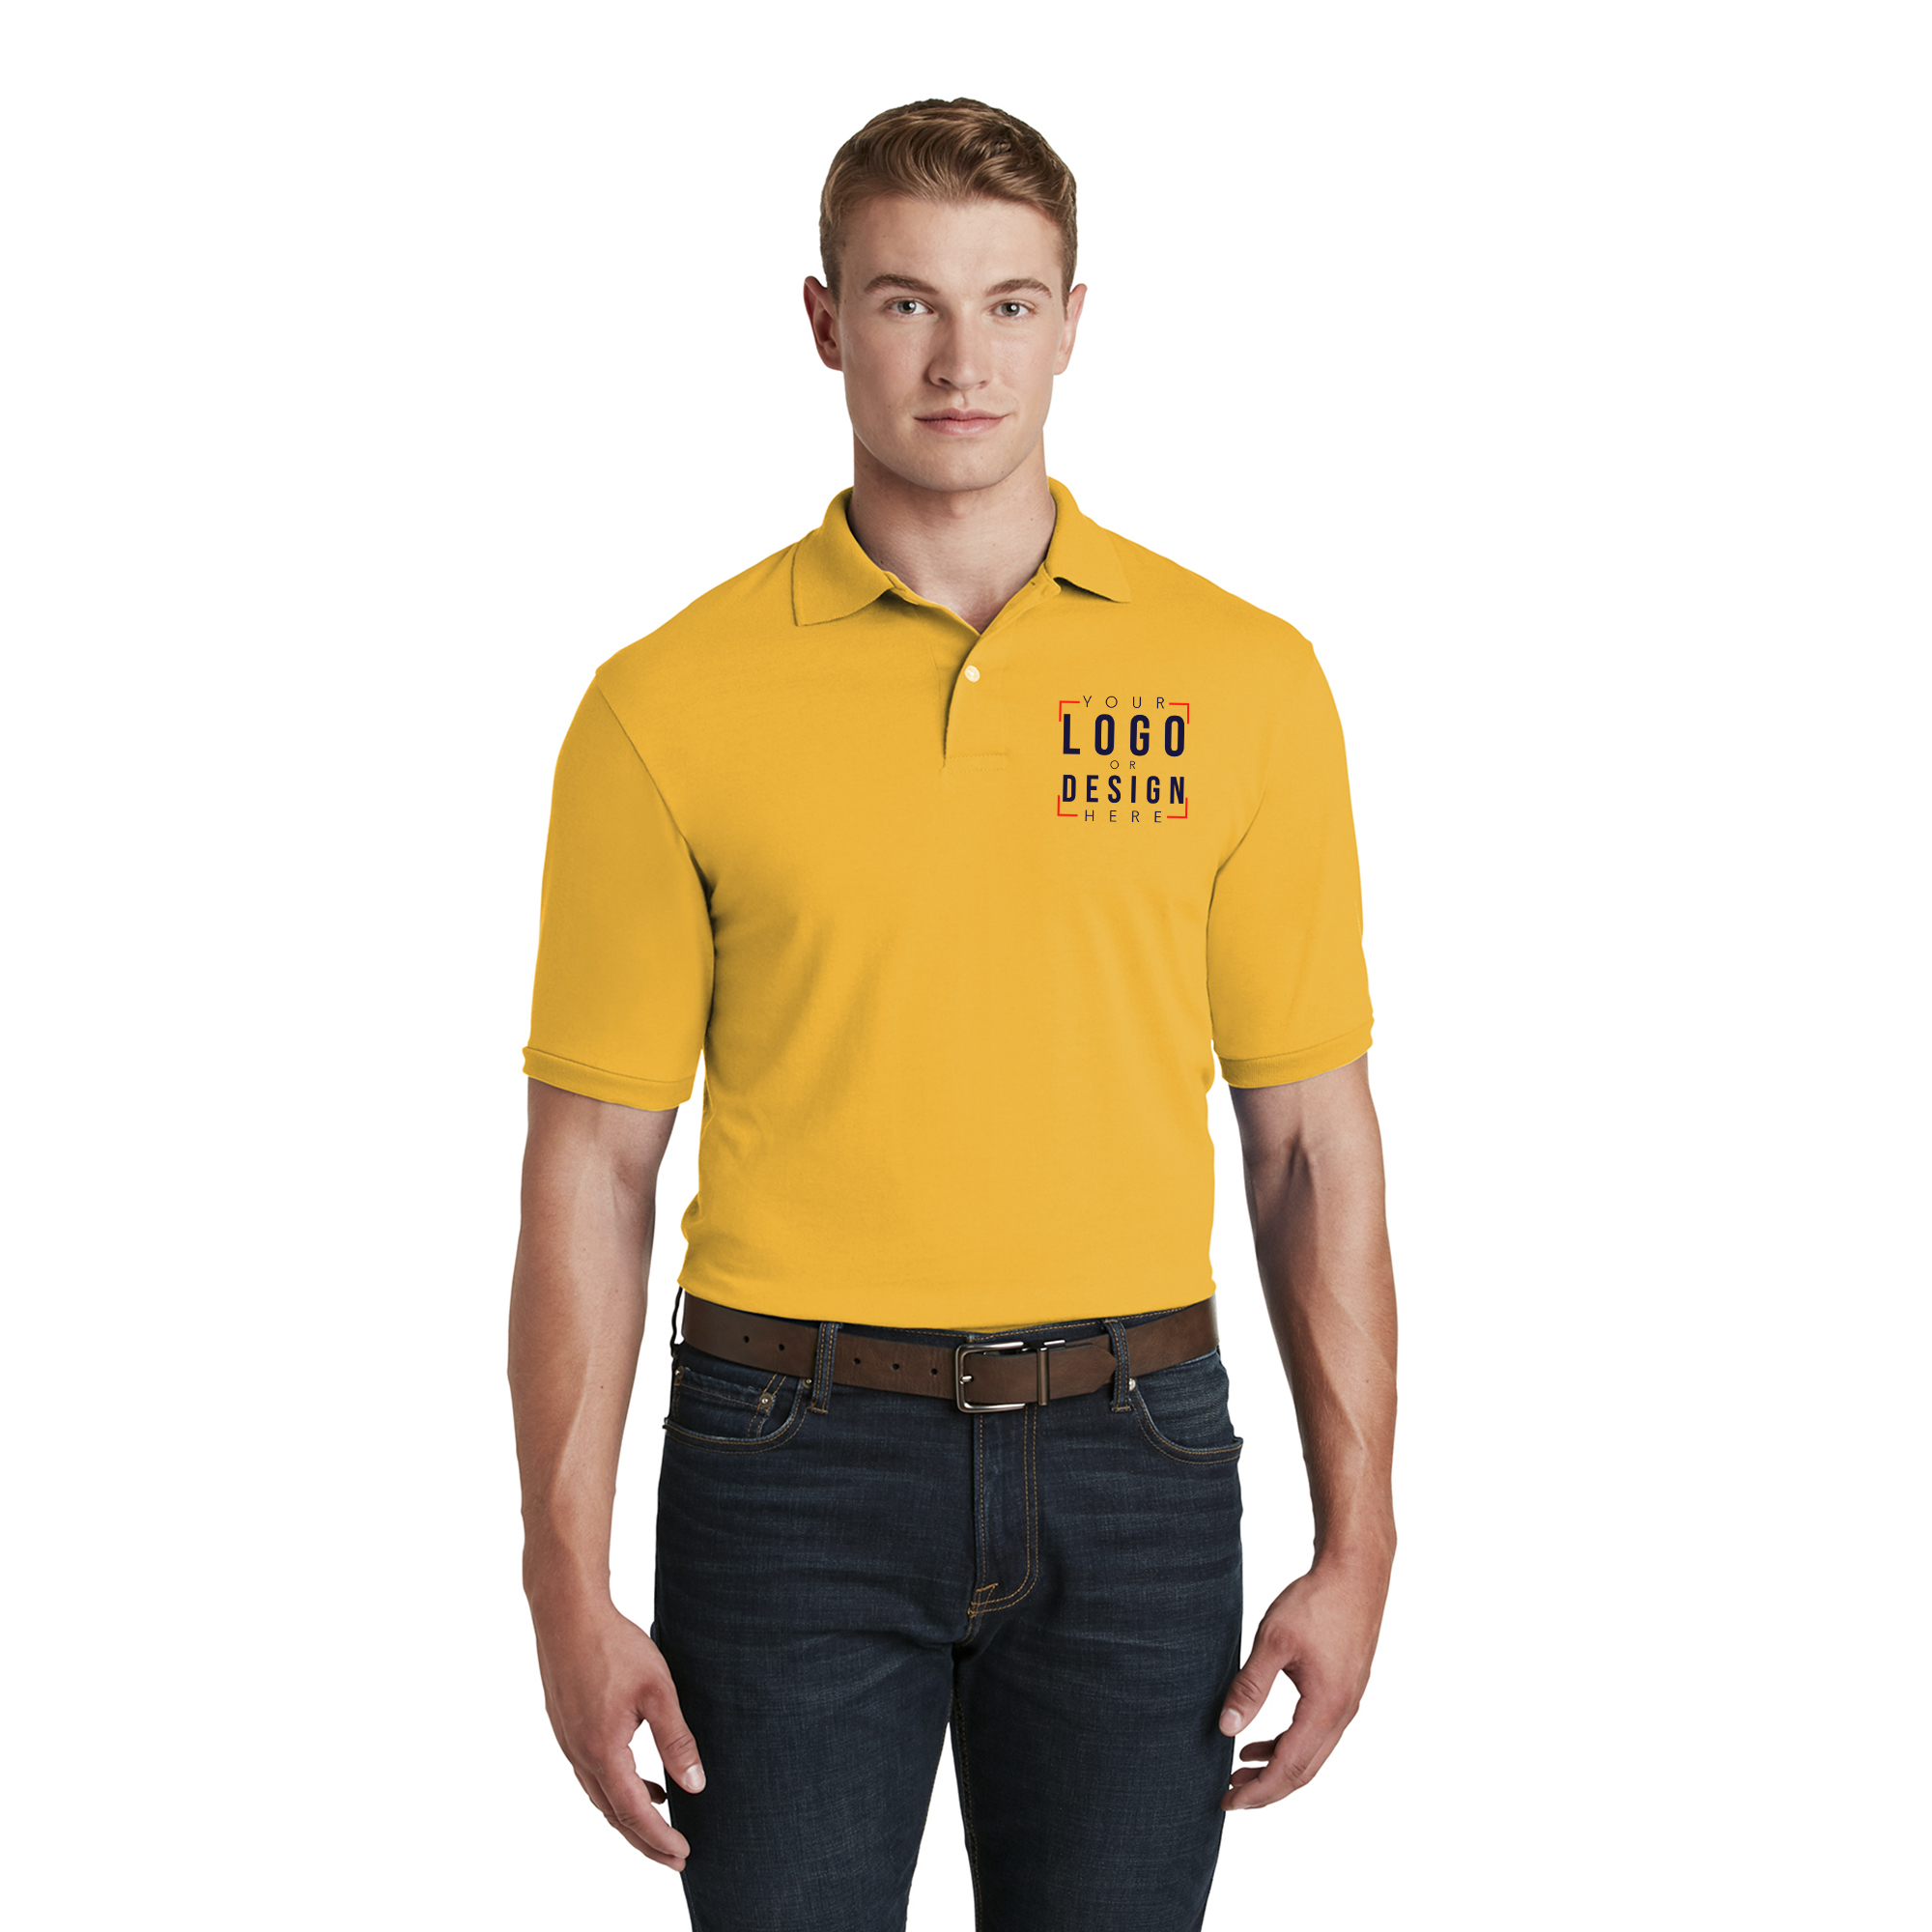 JERZEES - SpotShield 5.6-Ounce Jersey Knit Sport Shirt